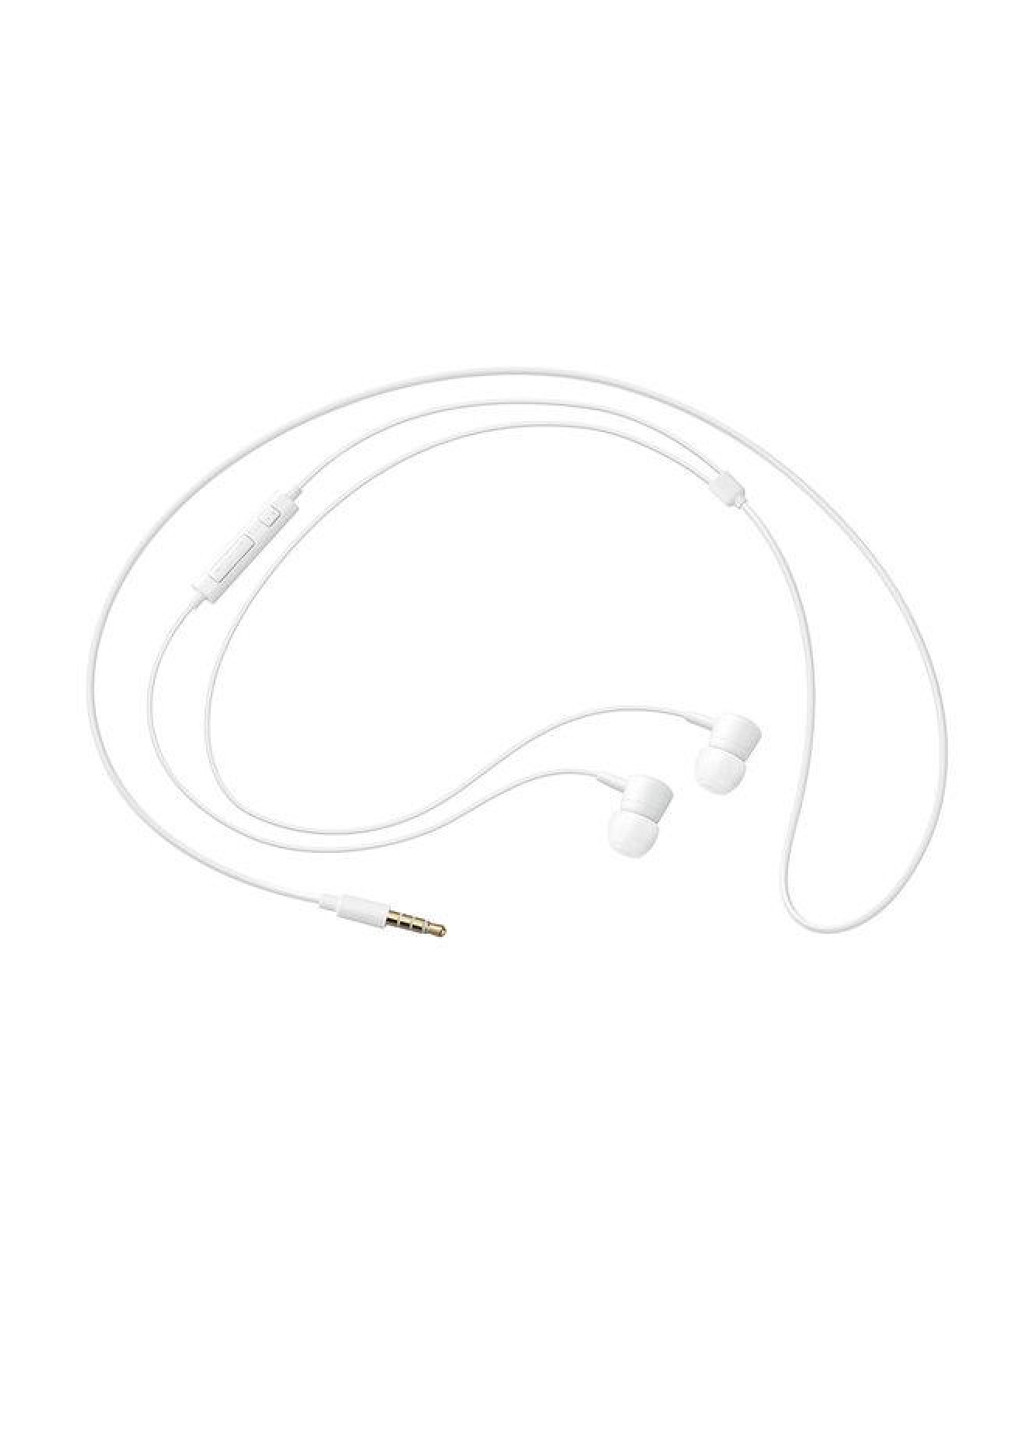 Проводная гарнитура Samsung Earphones Wired White белая